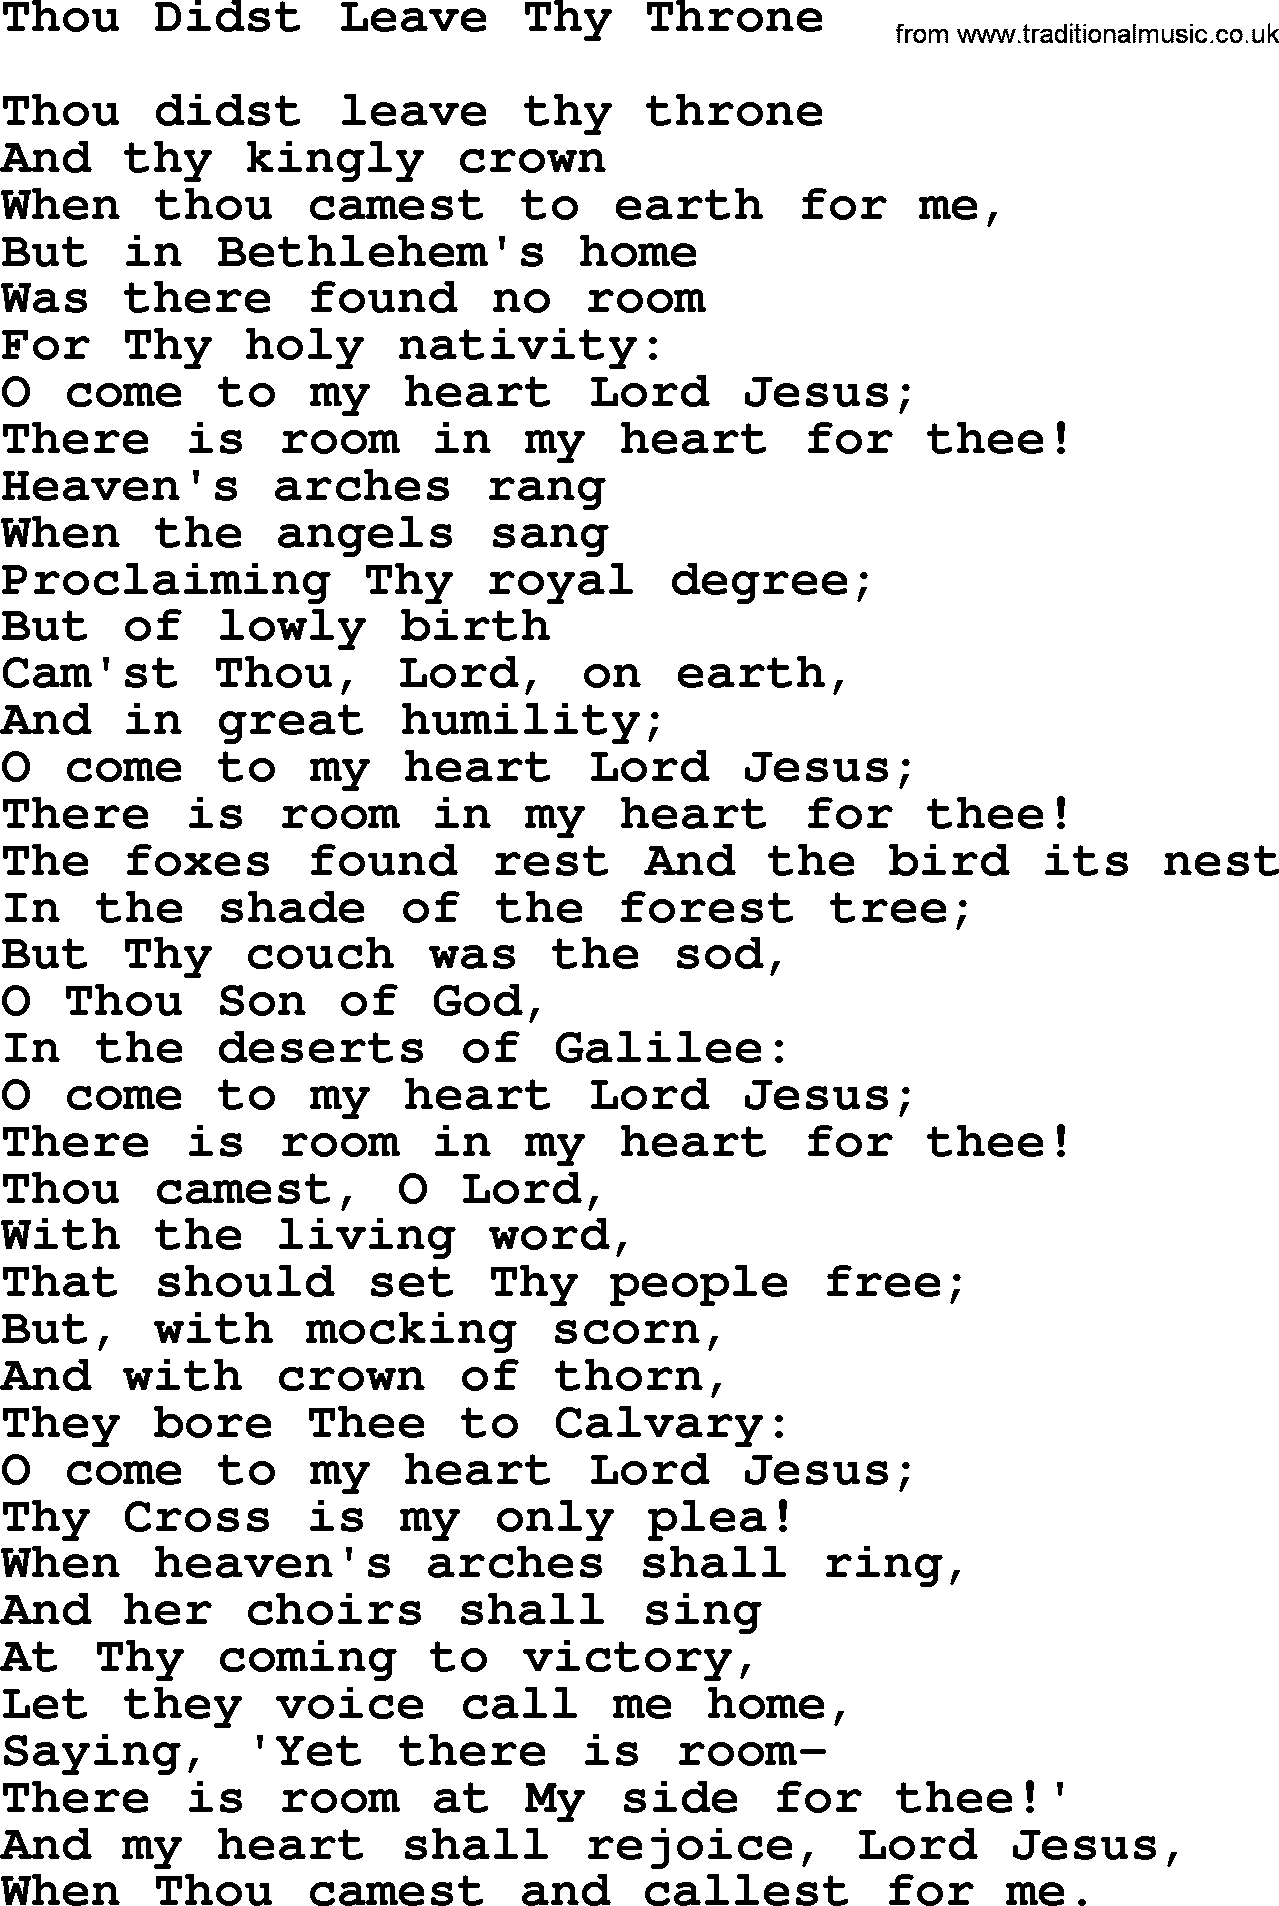 Catholic Hymn: Thou Didst Leave Thy Throne lyrics with PDF